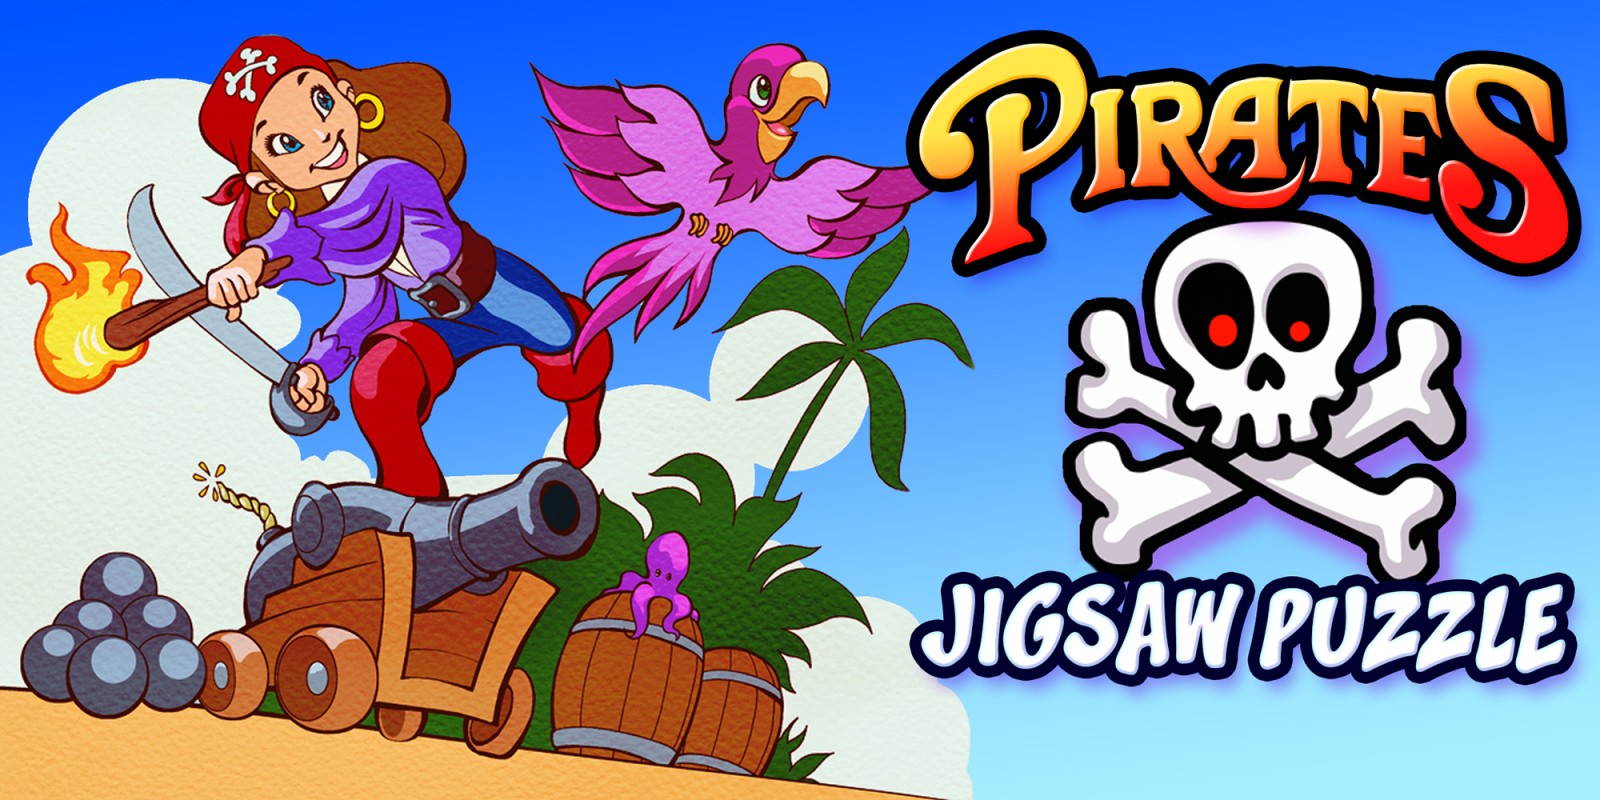 Pirates Jigsaw Puzzle - piratas rompecabezas educación aventura aprendizaje rompecabeza juegos para niños y niños pequeños